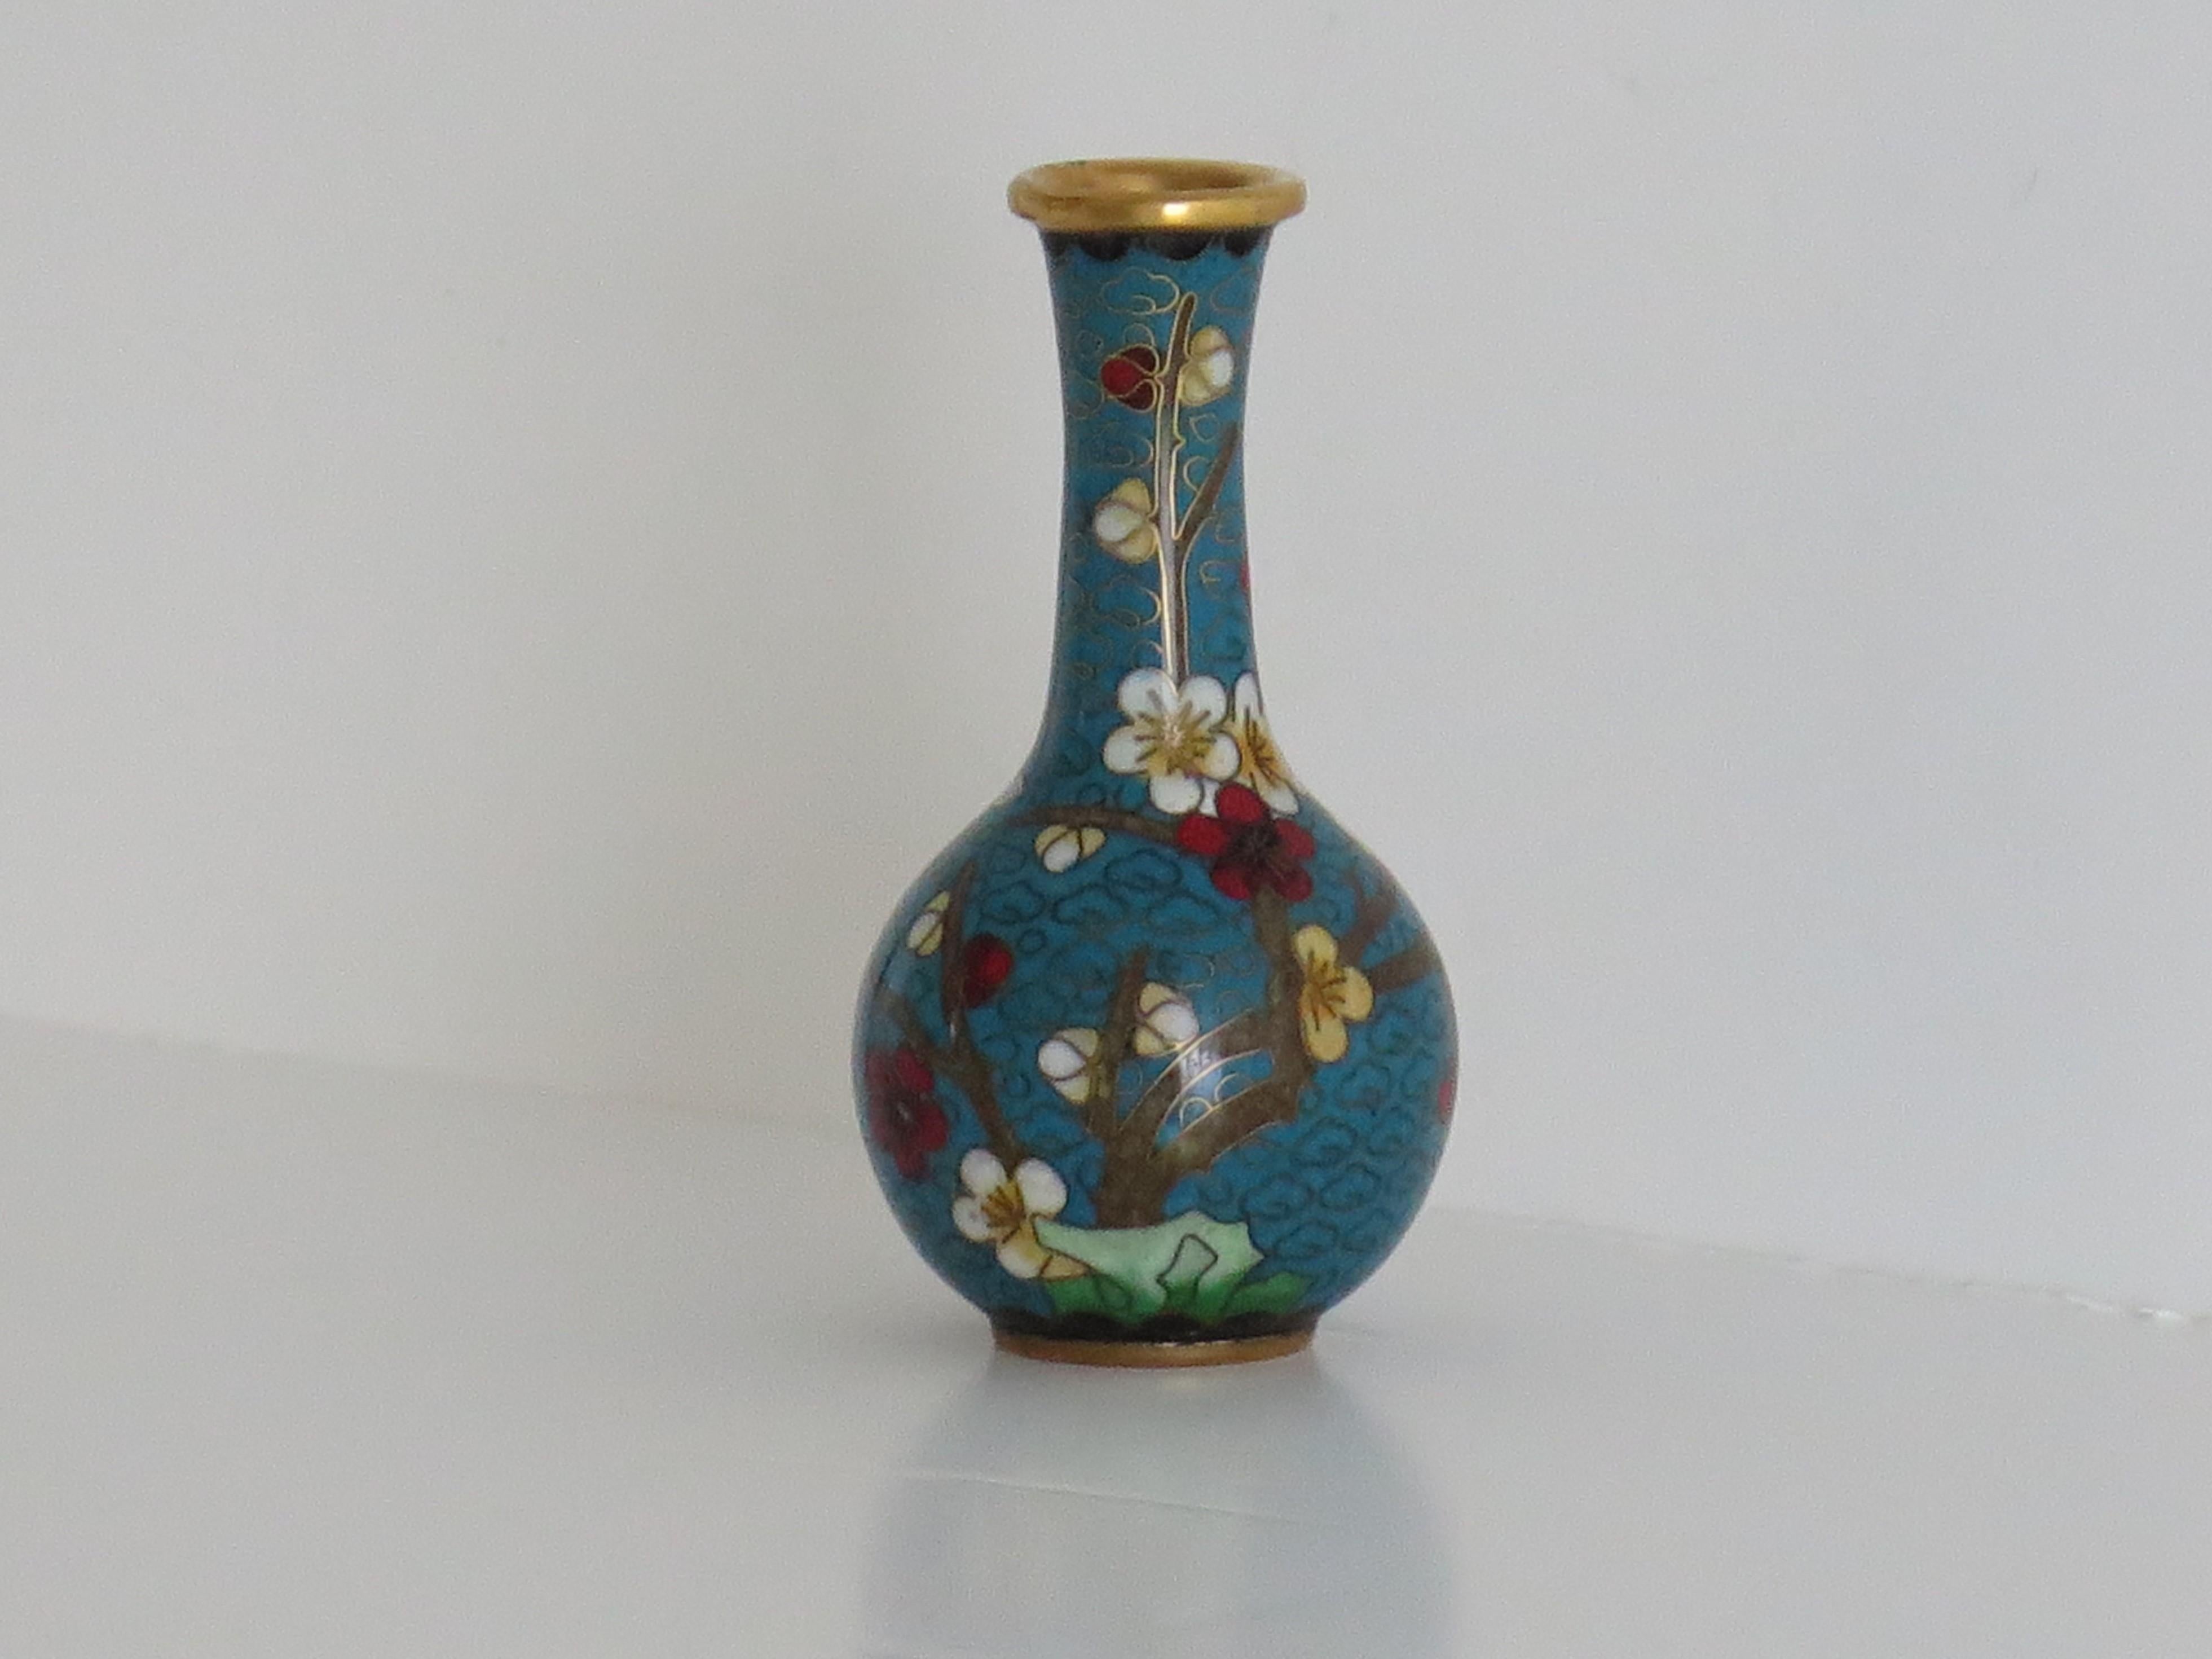 Il s'agit d'un petit vase cloisonné très décoratif, fabriqué en Chine et datant du premier quart du 20e siècle. 

Le vase a une bonne forme de balustre globulaire. Elle a été réalisée en alliage de bronze avec de riches émaux de différentes